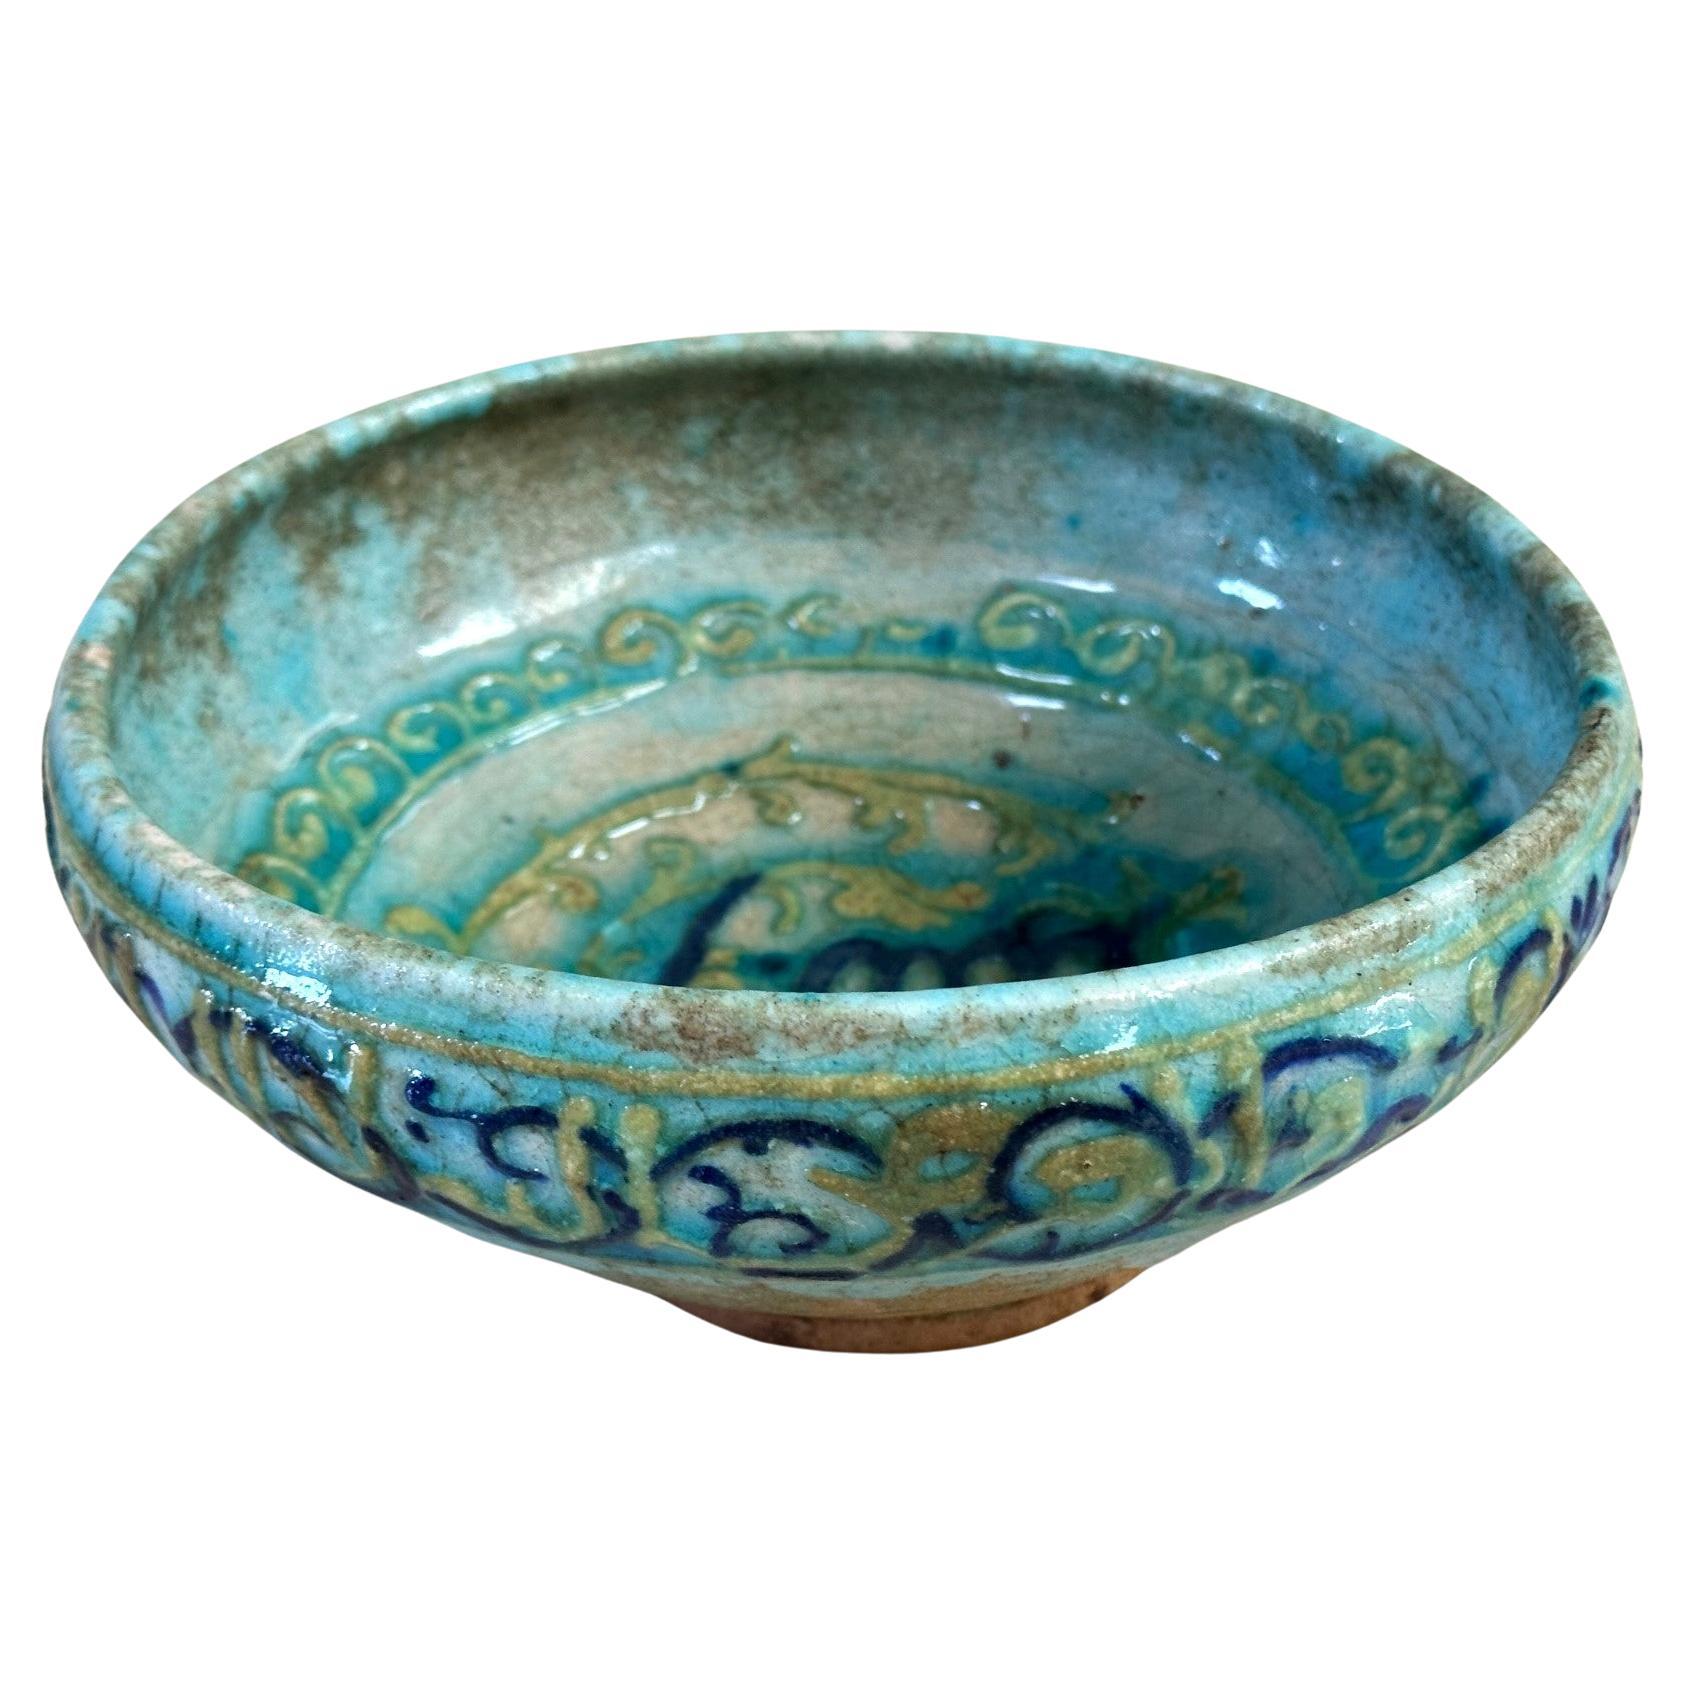 Islamic Glazed Ceramic Bowl with Relief Inscription 